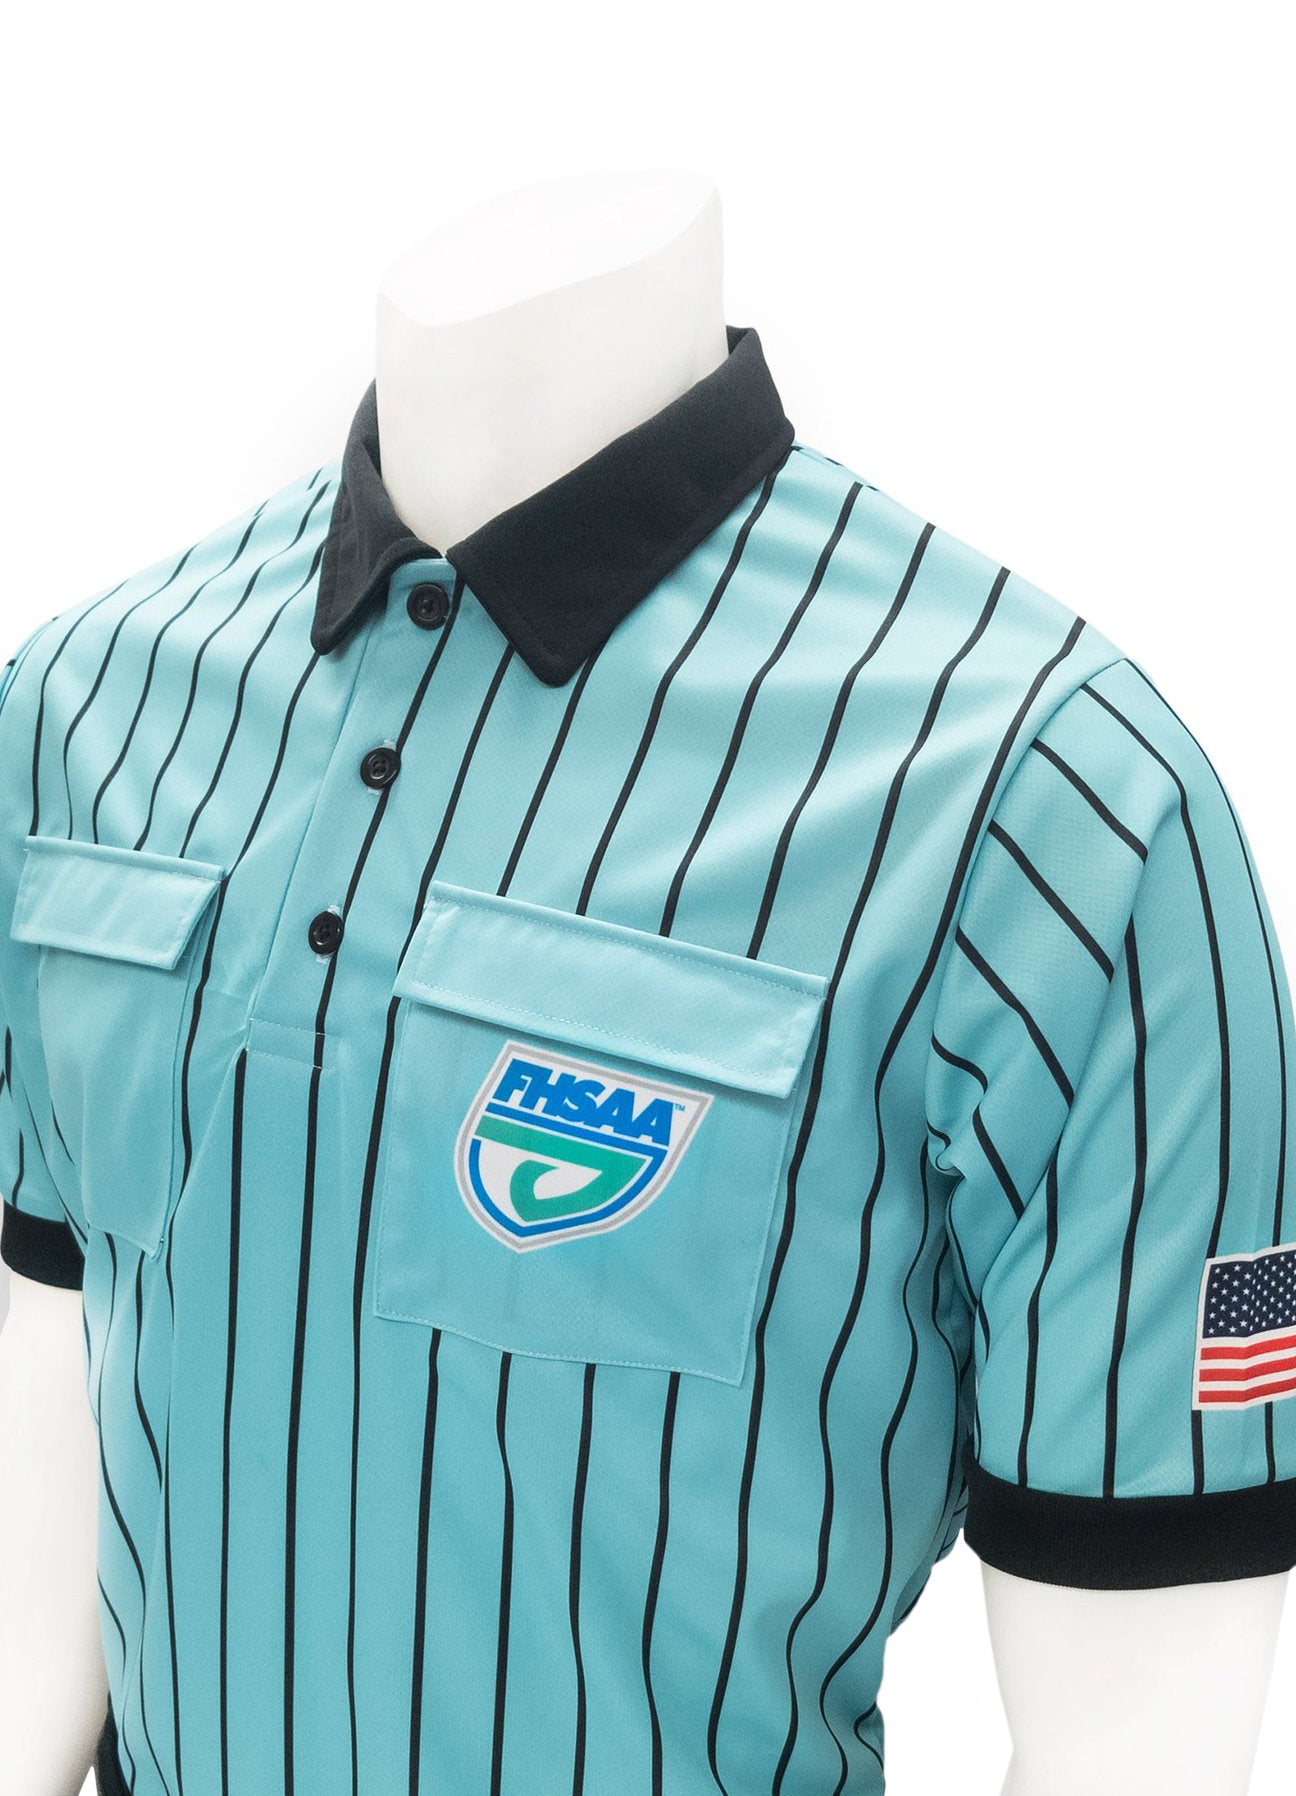 USA900FL - Smitty "Made in USA" - Dye Sub Soccer Short Sleeve Shirt